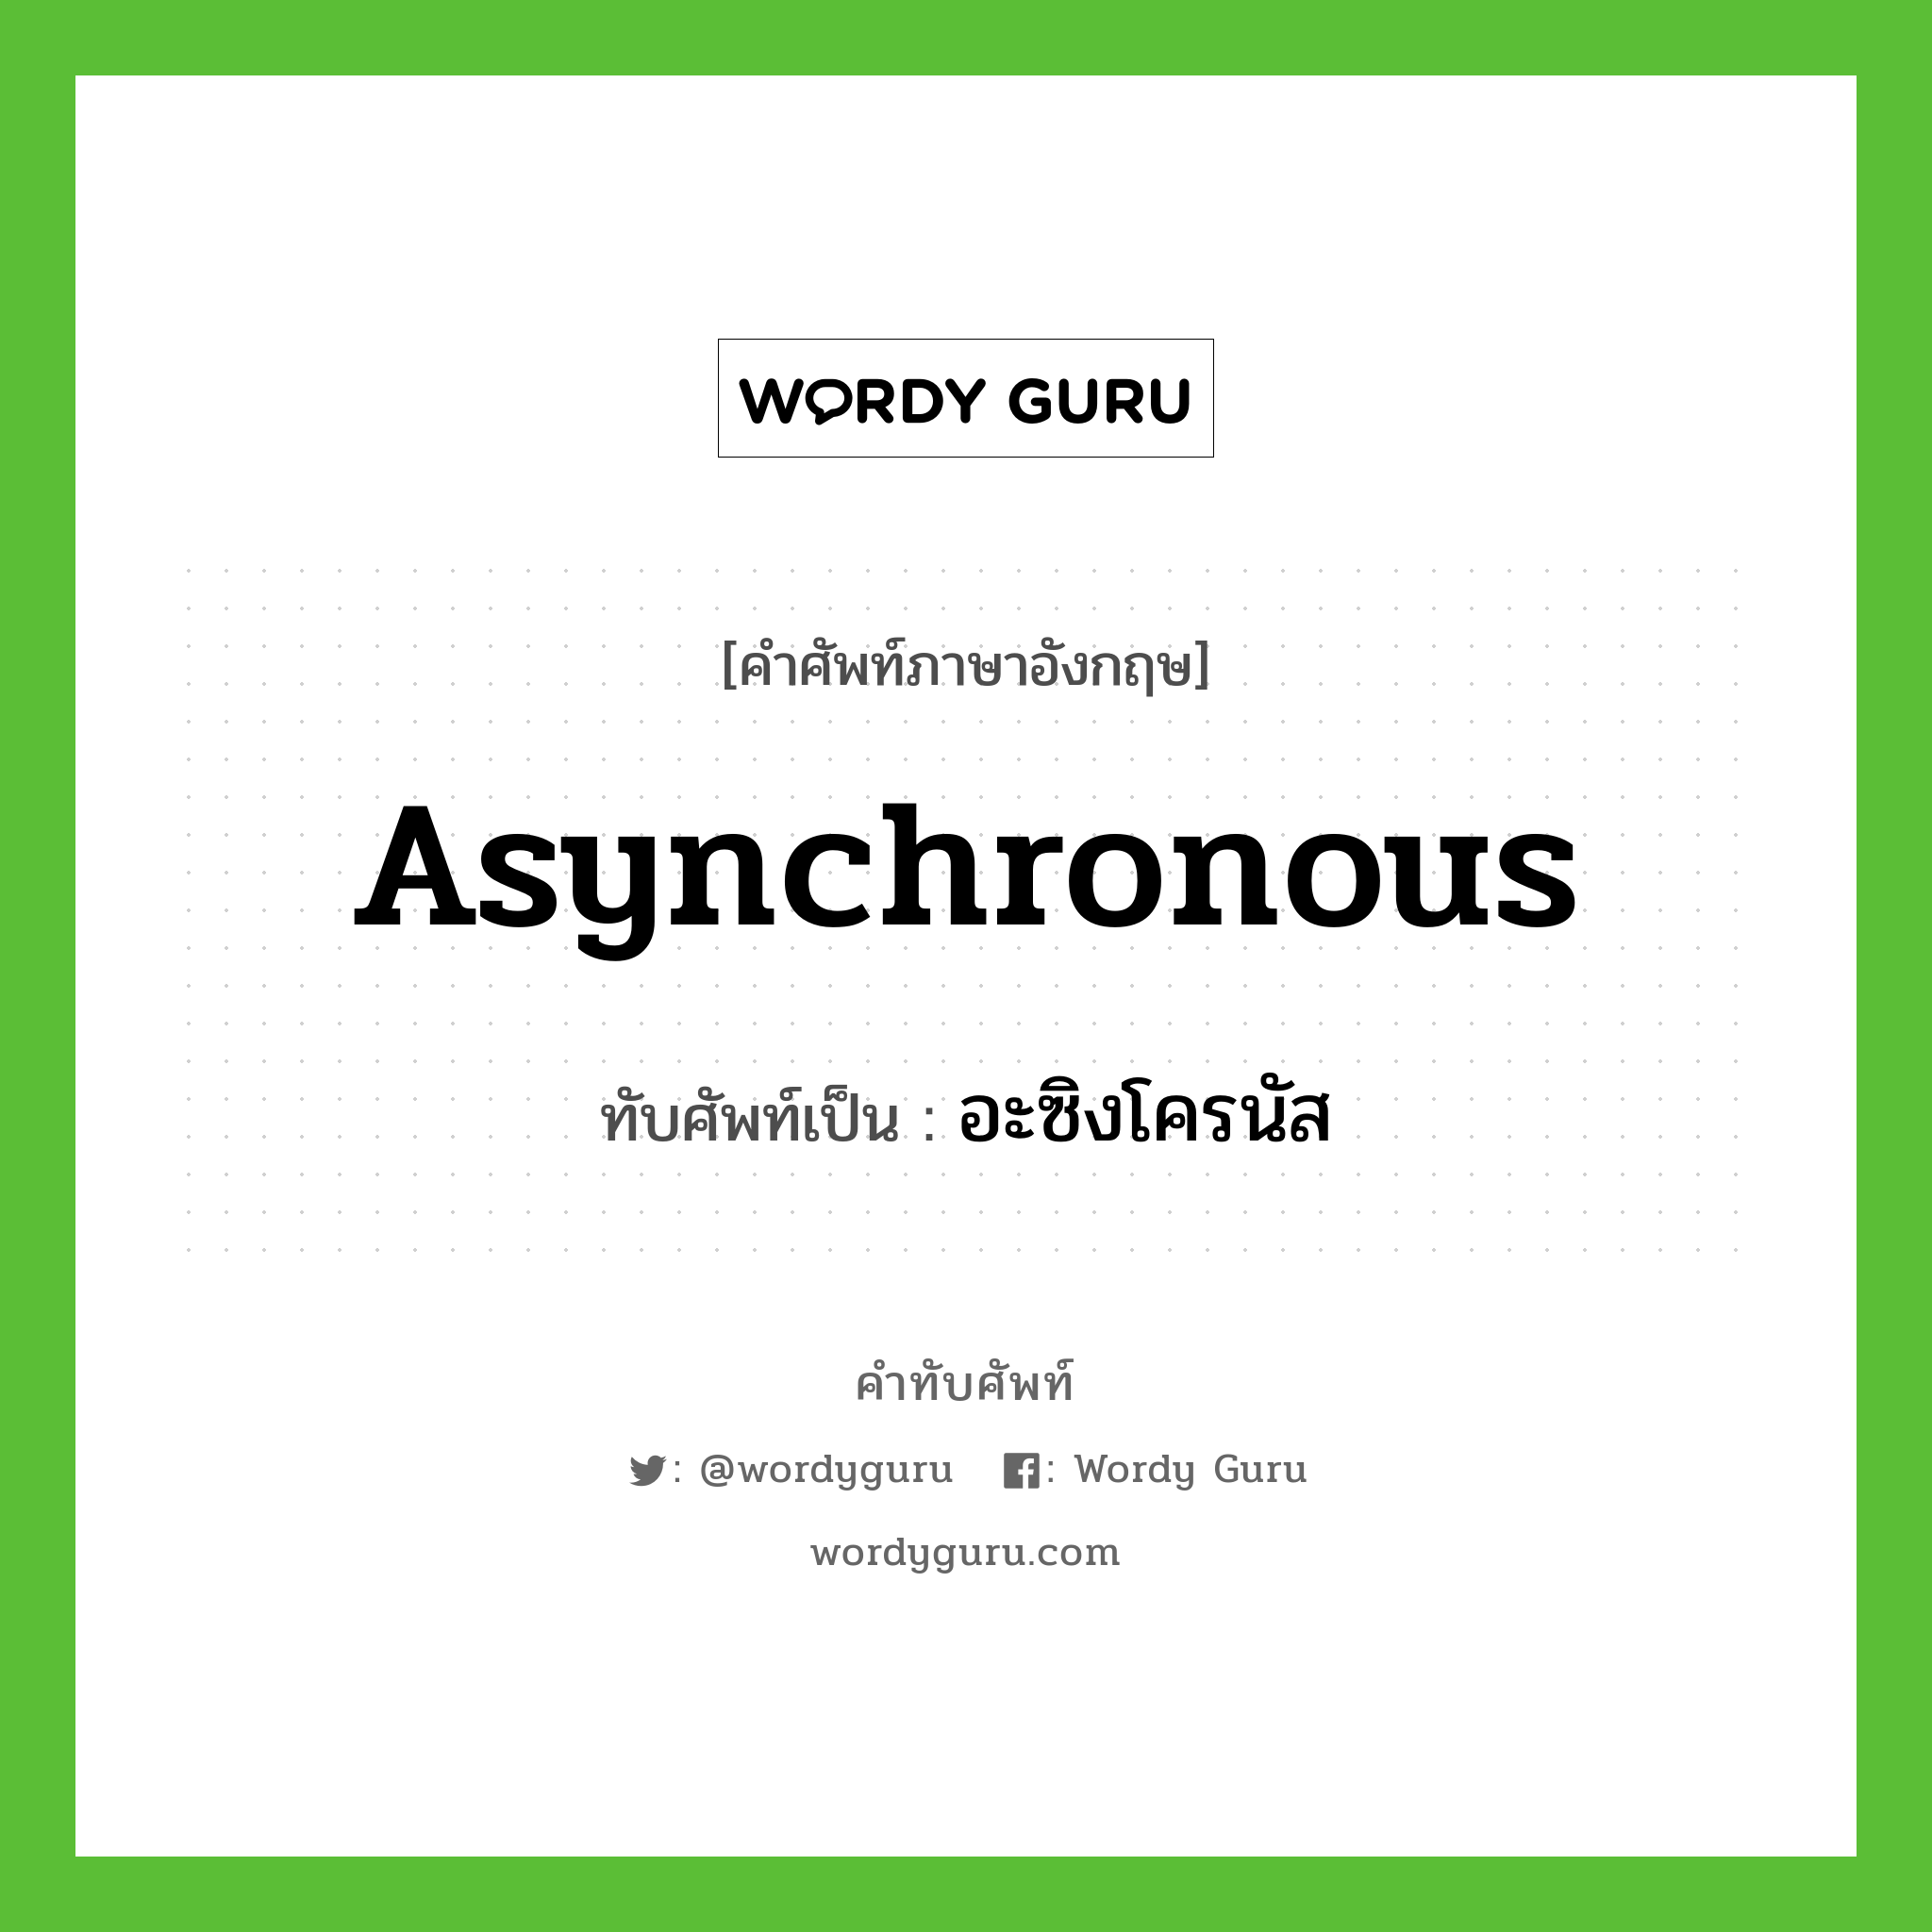 อะซิงโครนัส เขียนอย่างไร?, คำศัพท์ภาษาอังกฤษ อะซิงโครนัส ทับศัพท์เป็น asynchronous